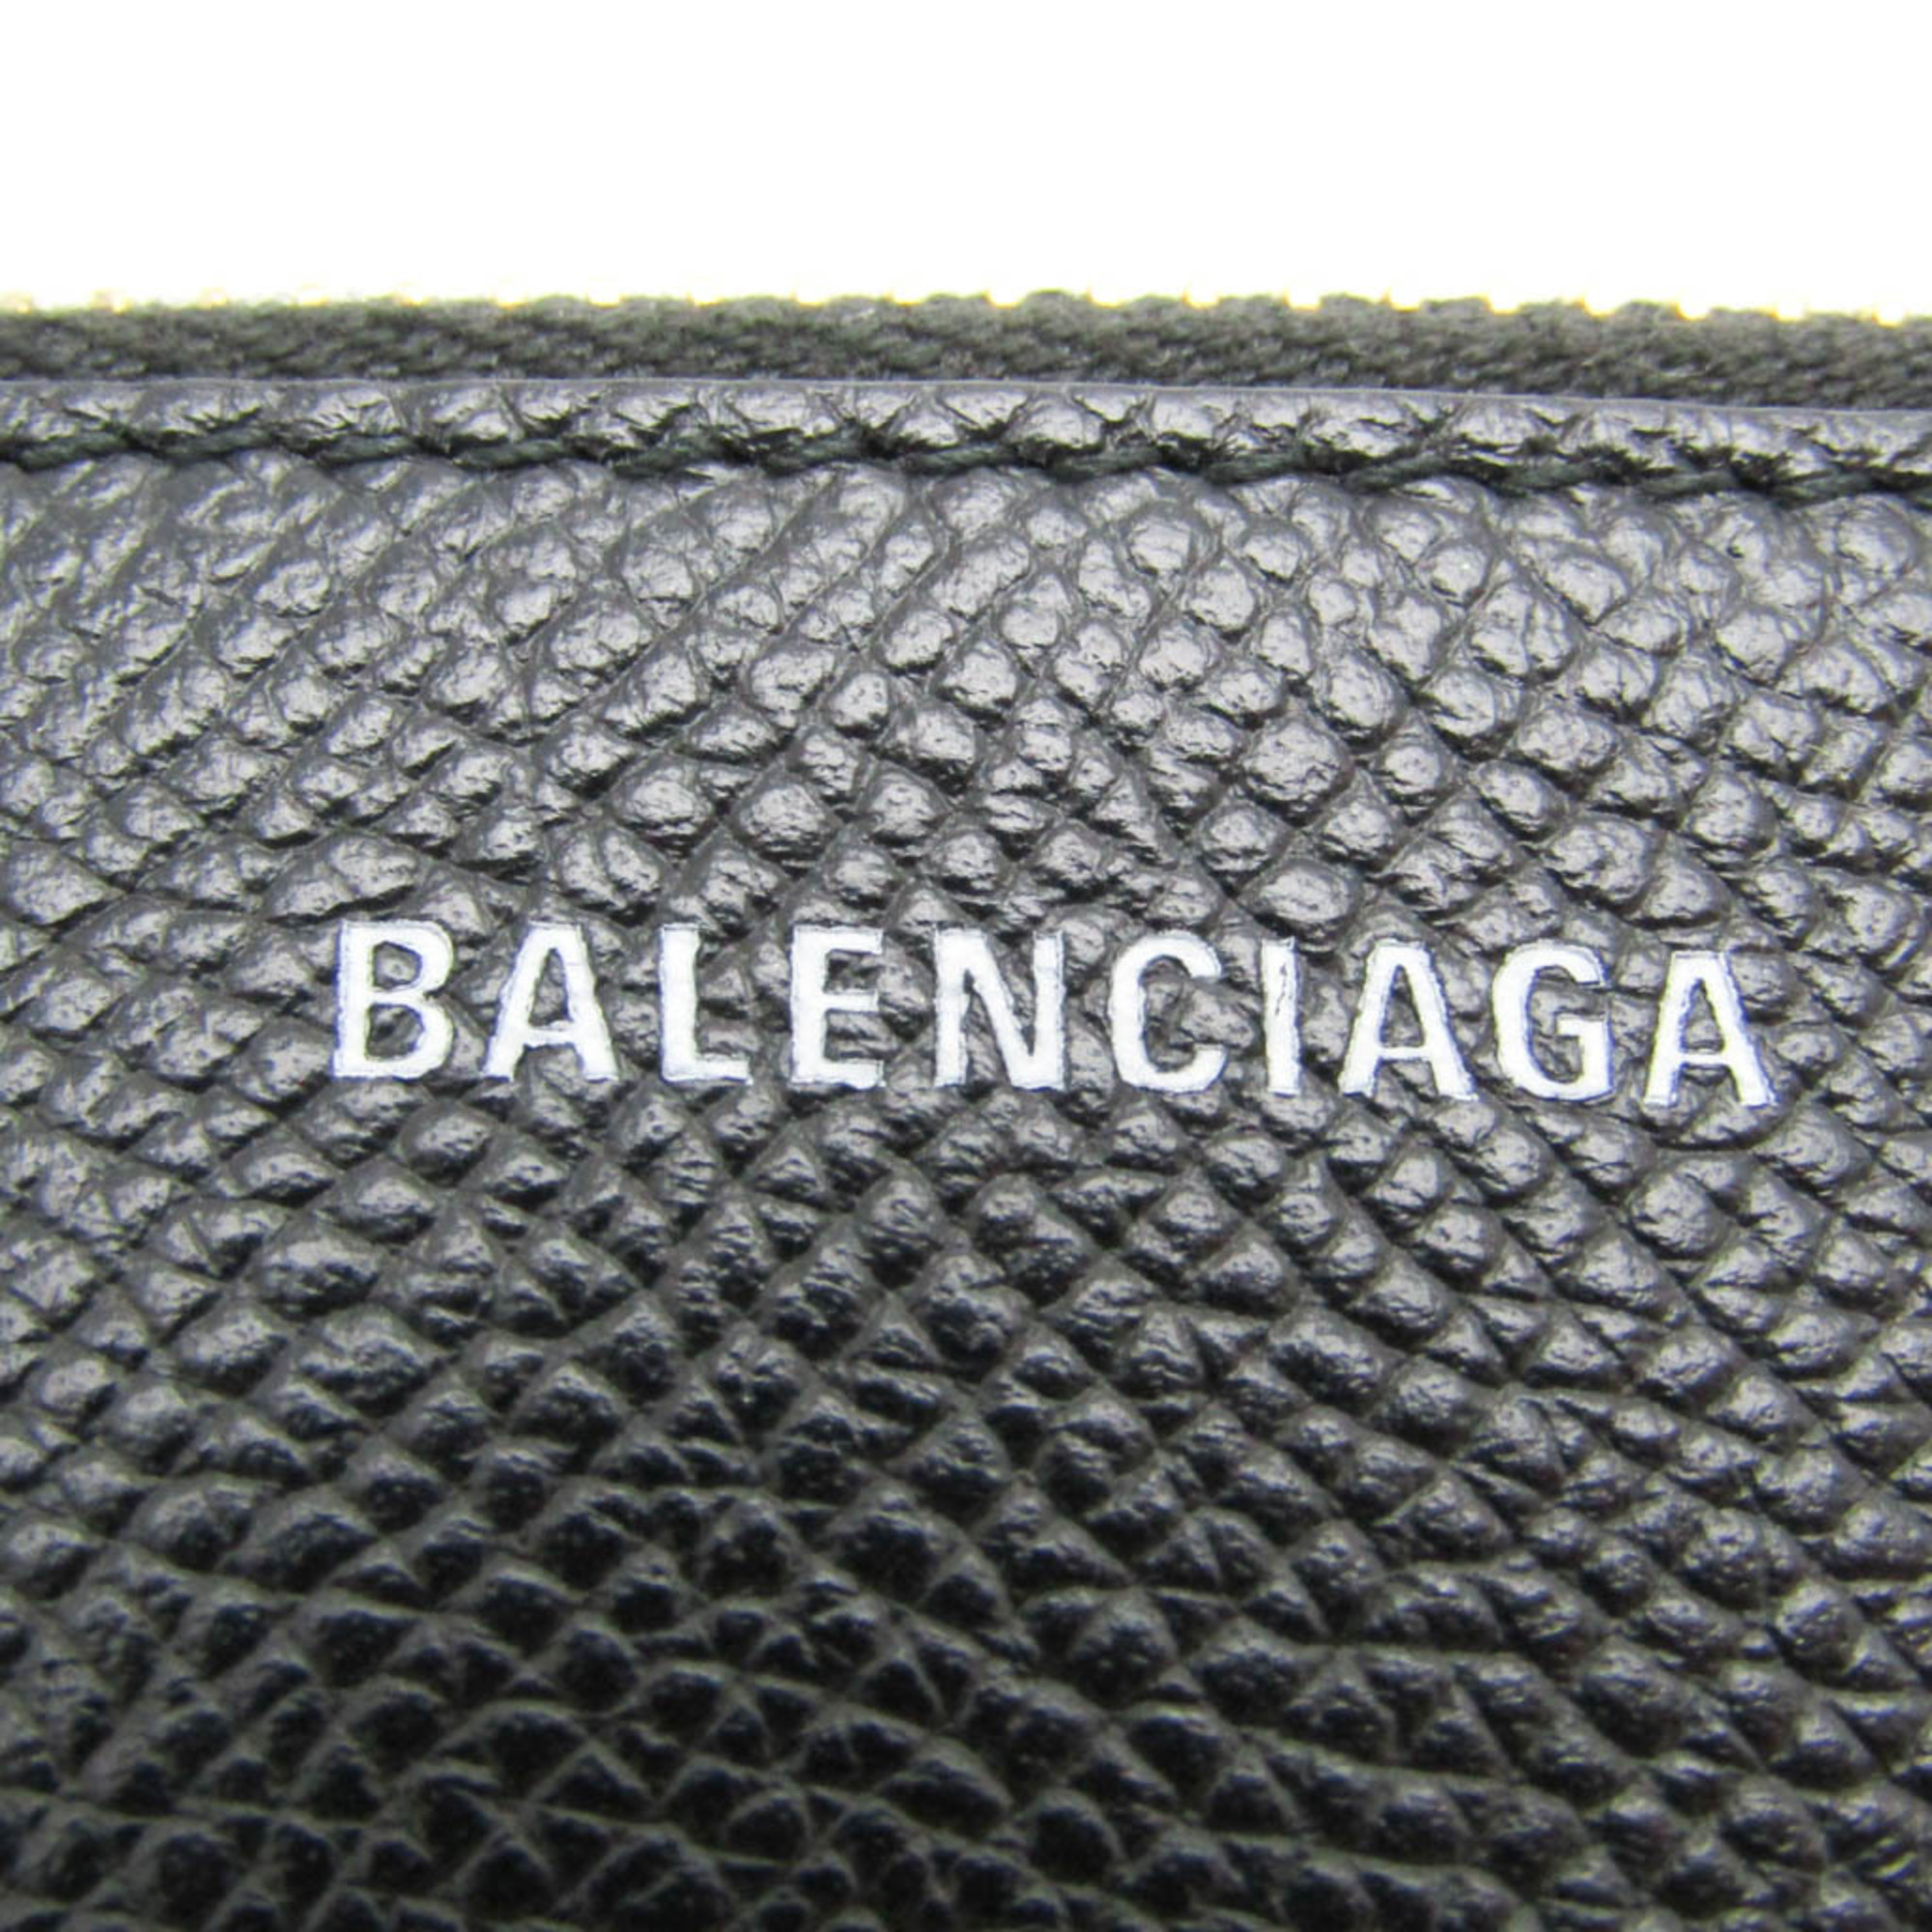 バレンシアガ(Balenciaga) VILLE LONG CARD HAND WRITTEN SIGNATURE コインケース 581102 レザー カードケース ブラック